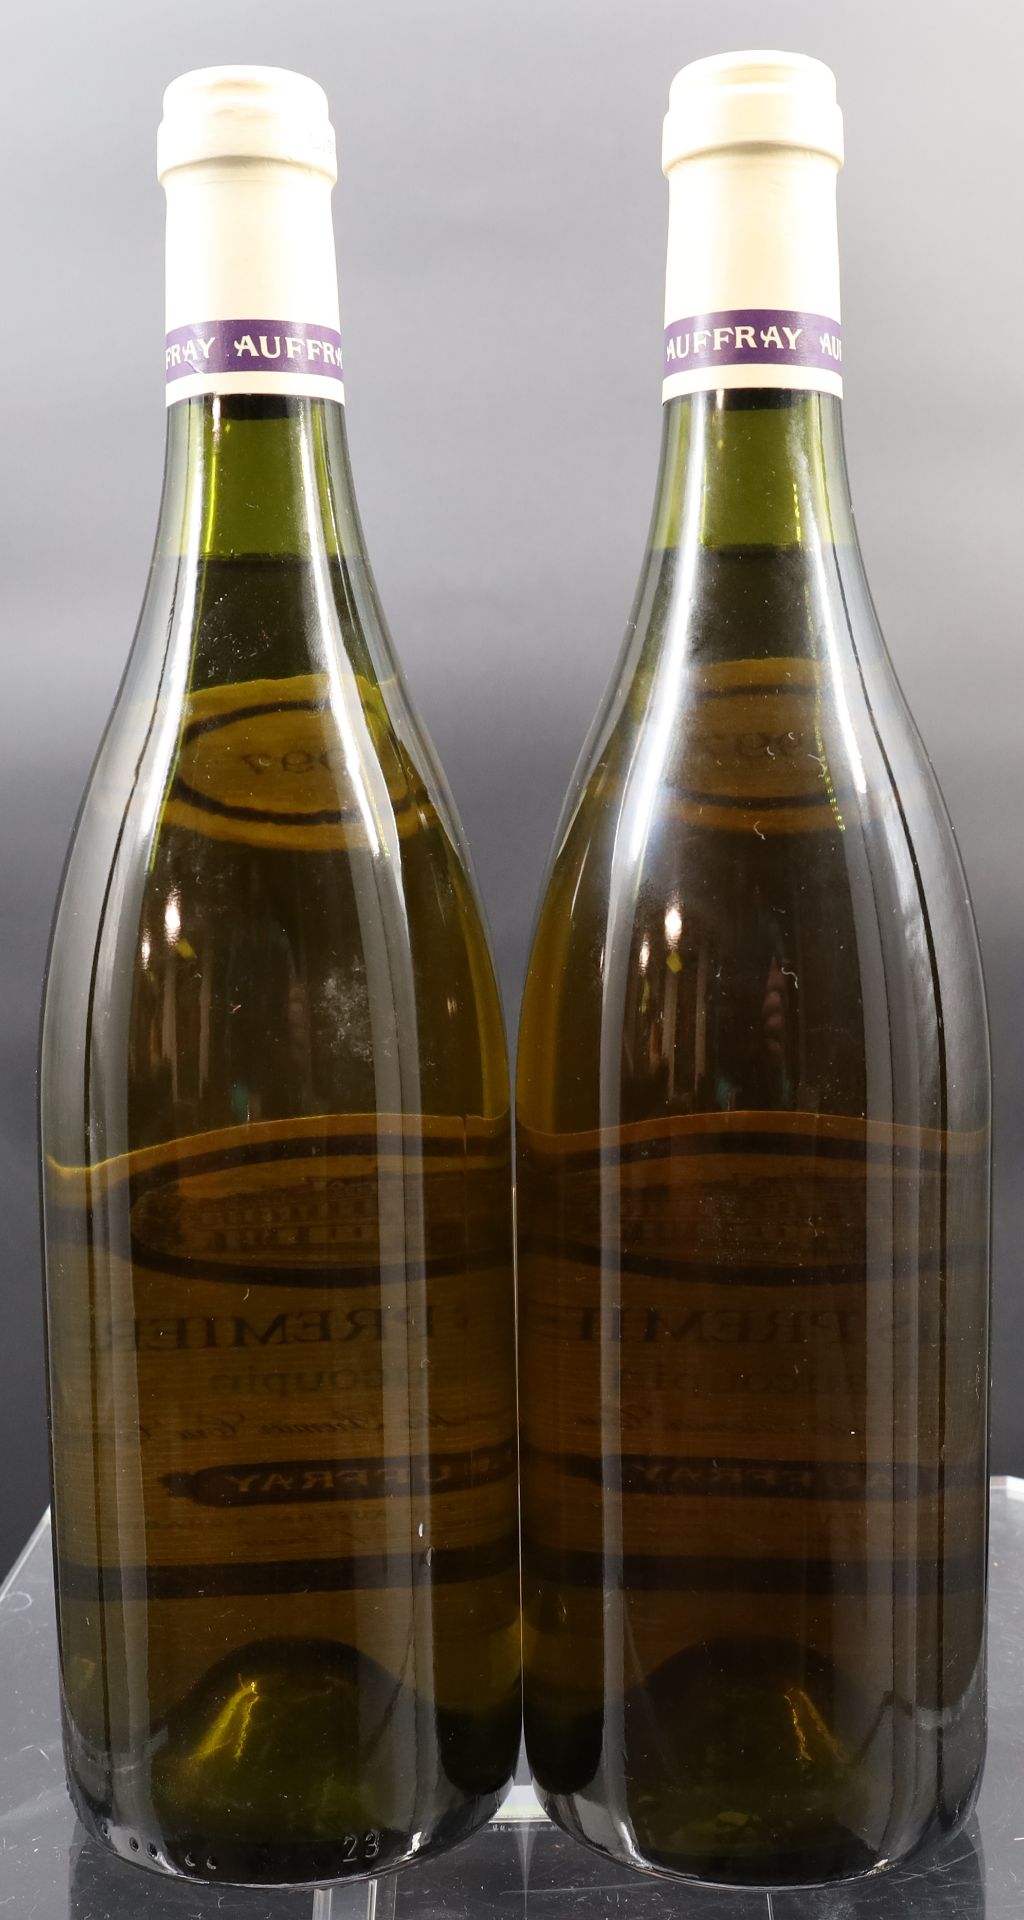 2 Flaschen Weißwein. AUFFRAY. Chablis Premier Cru. 1997. Frankreich. - Bild 4 aus 5